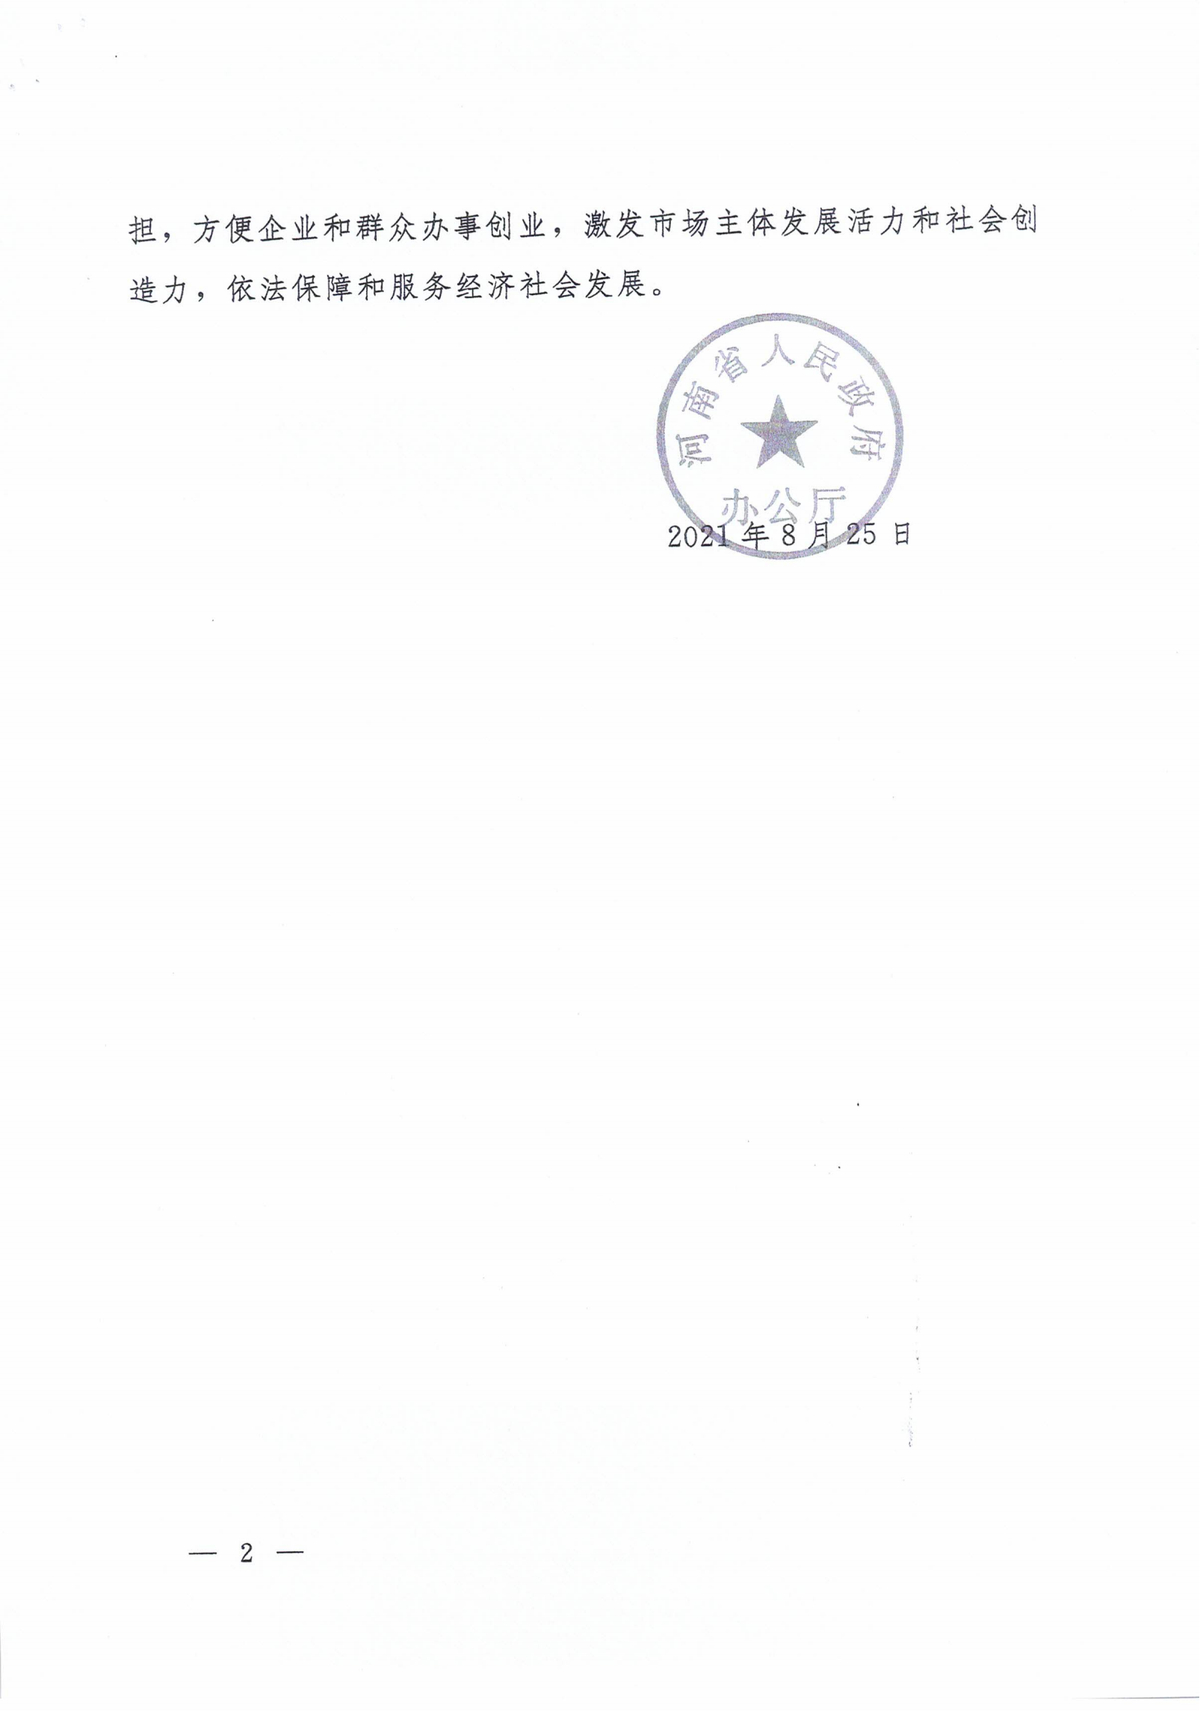 河南省水利厅关于省级证明事项告知承诺制清单的公示